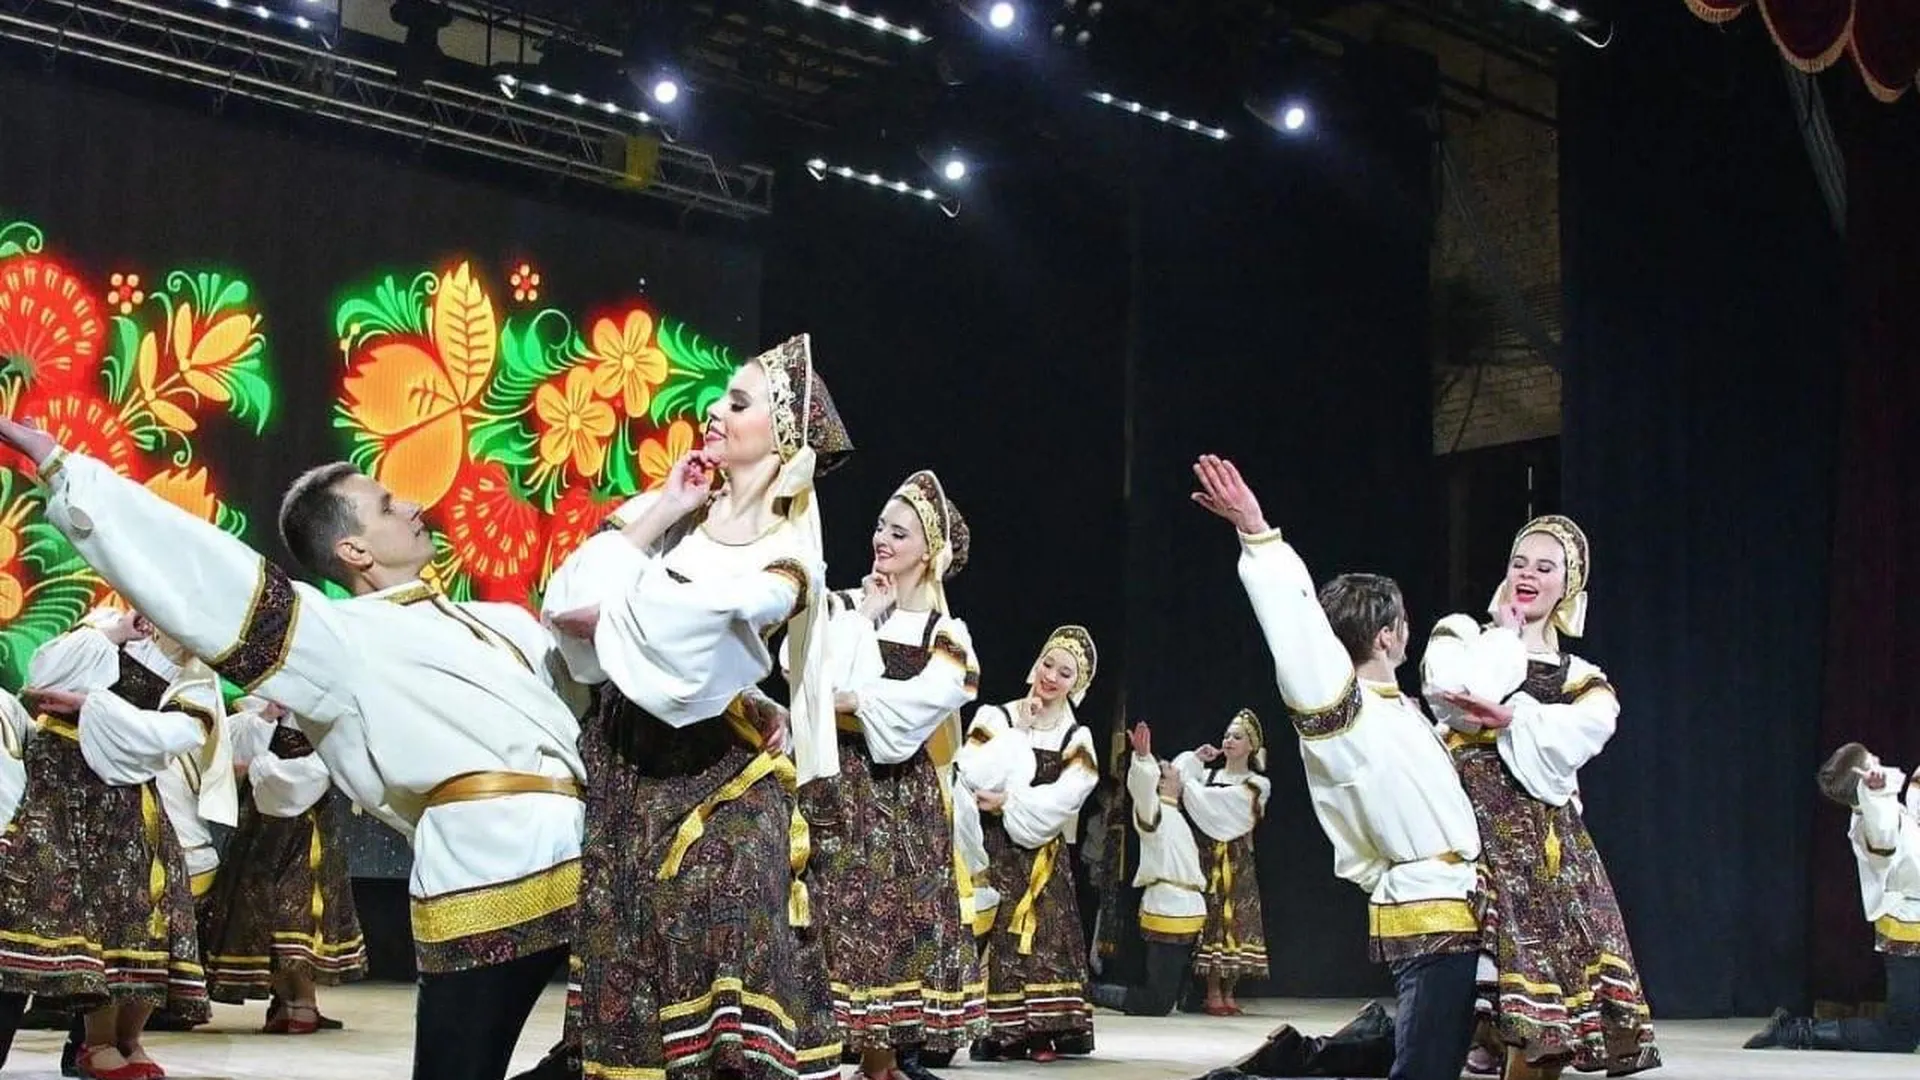 Конкурс хореографического искусства «Магия танца» пройдет в Люберцах 14 апреля